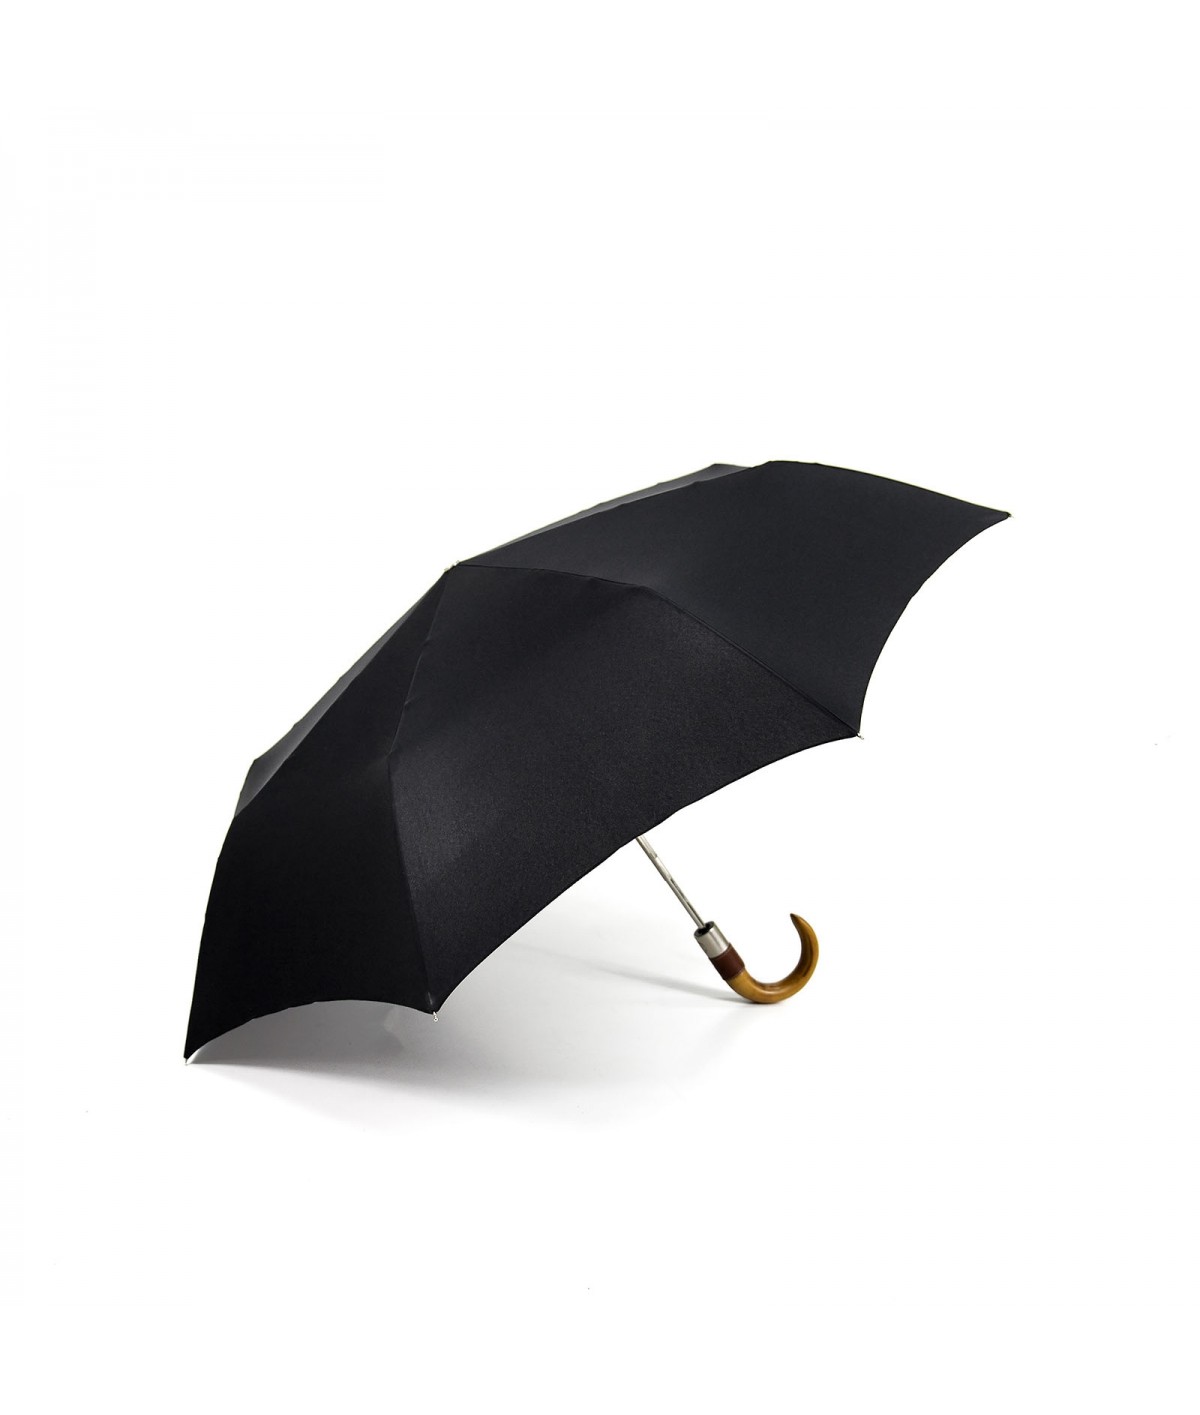 → Longchamp - "Men's Umbrella" Rifle - Mini Automatic - by the French Umbrellas Manufacturer Maison Pierre Vaux